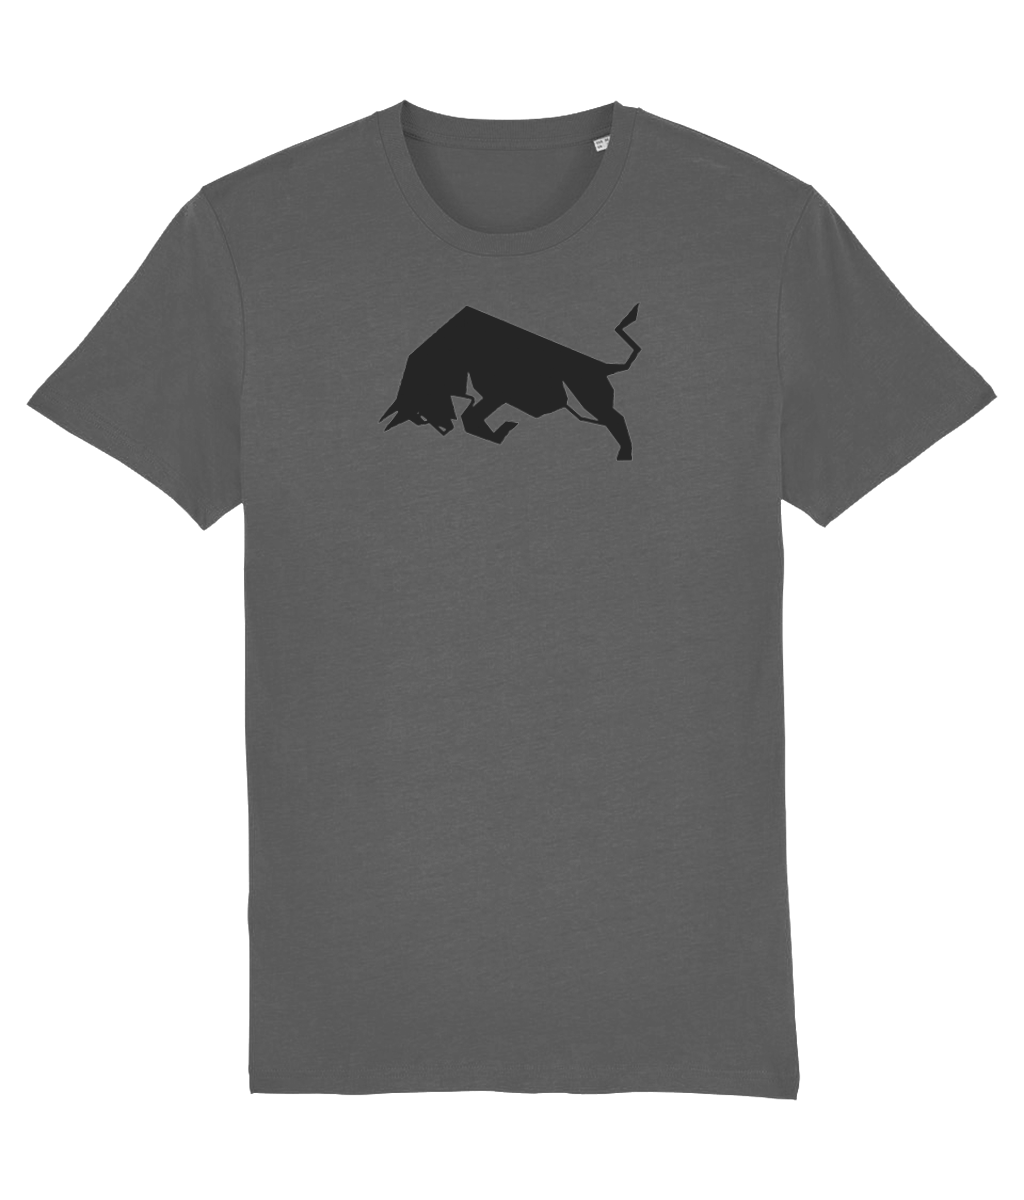 Charcoal Bull Organic Cotton T-Shirt